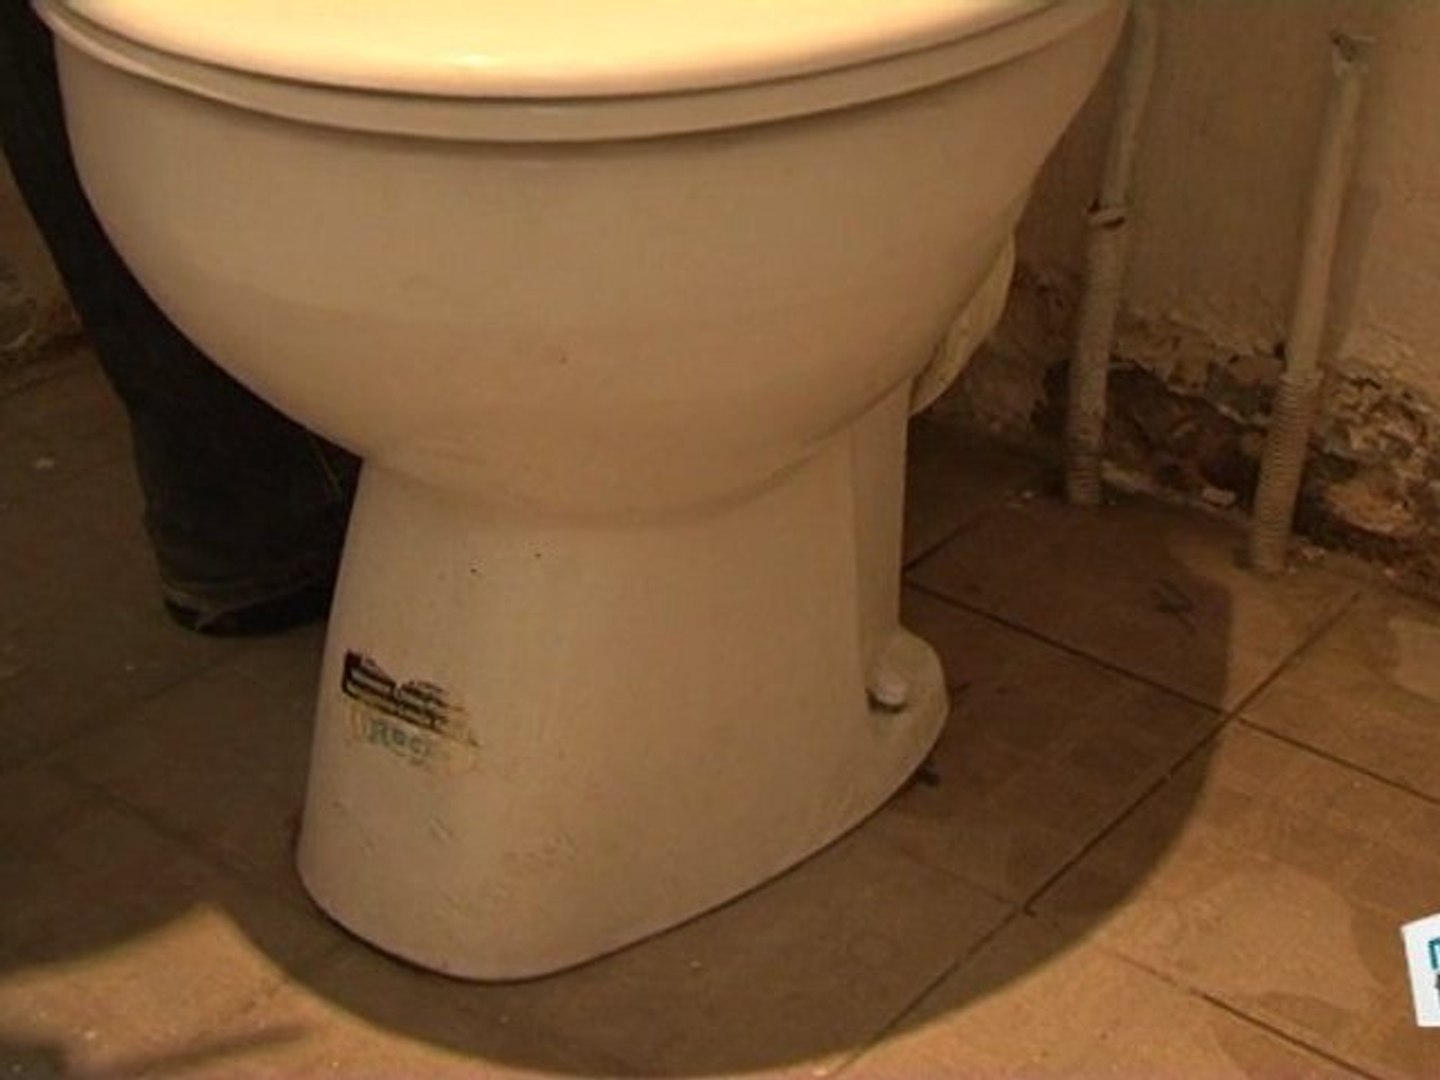 Comment démonter une cuvette de toilette ? - Vidéo Dailymotion